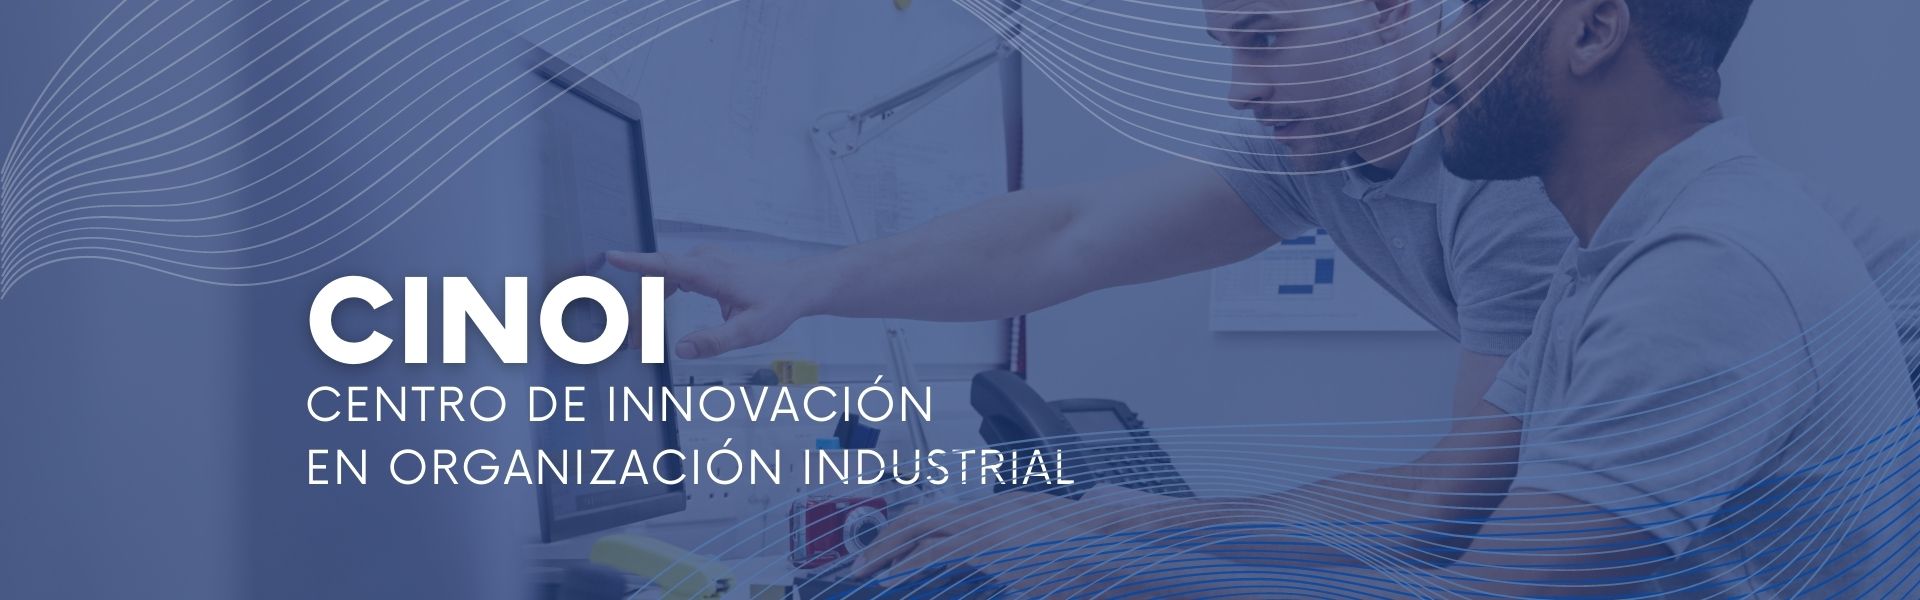 Cabezal Centro de Innovación en Organización Industrial